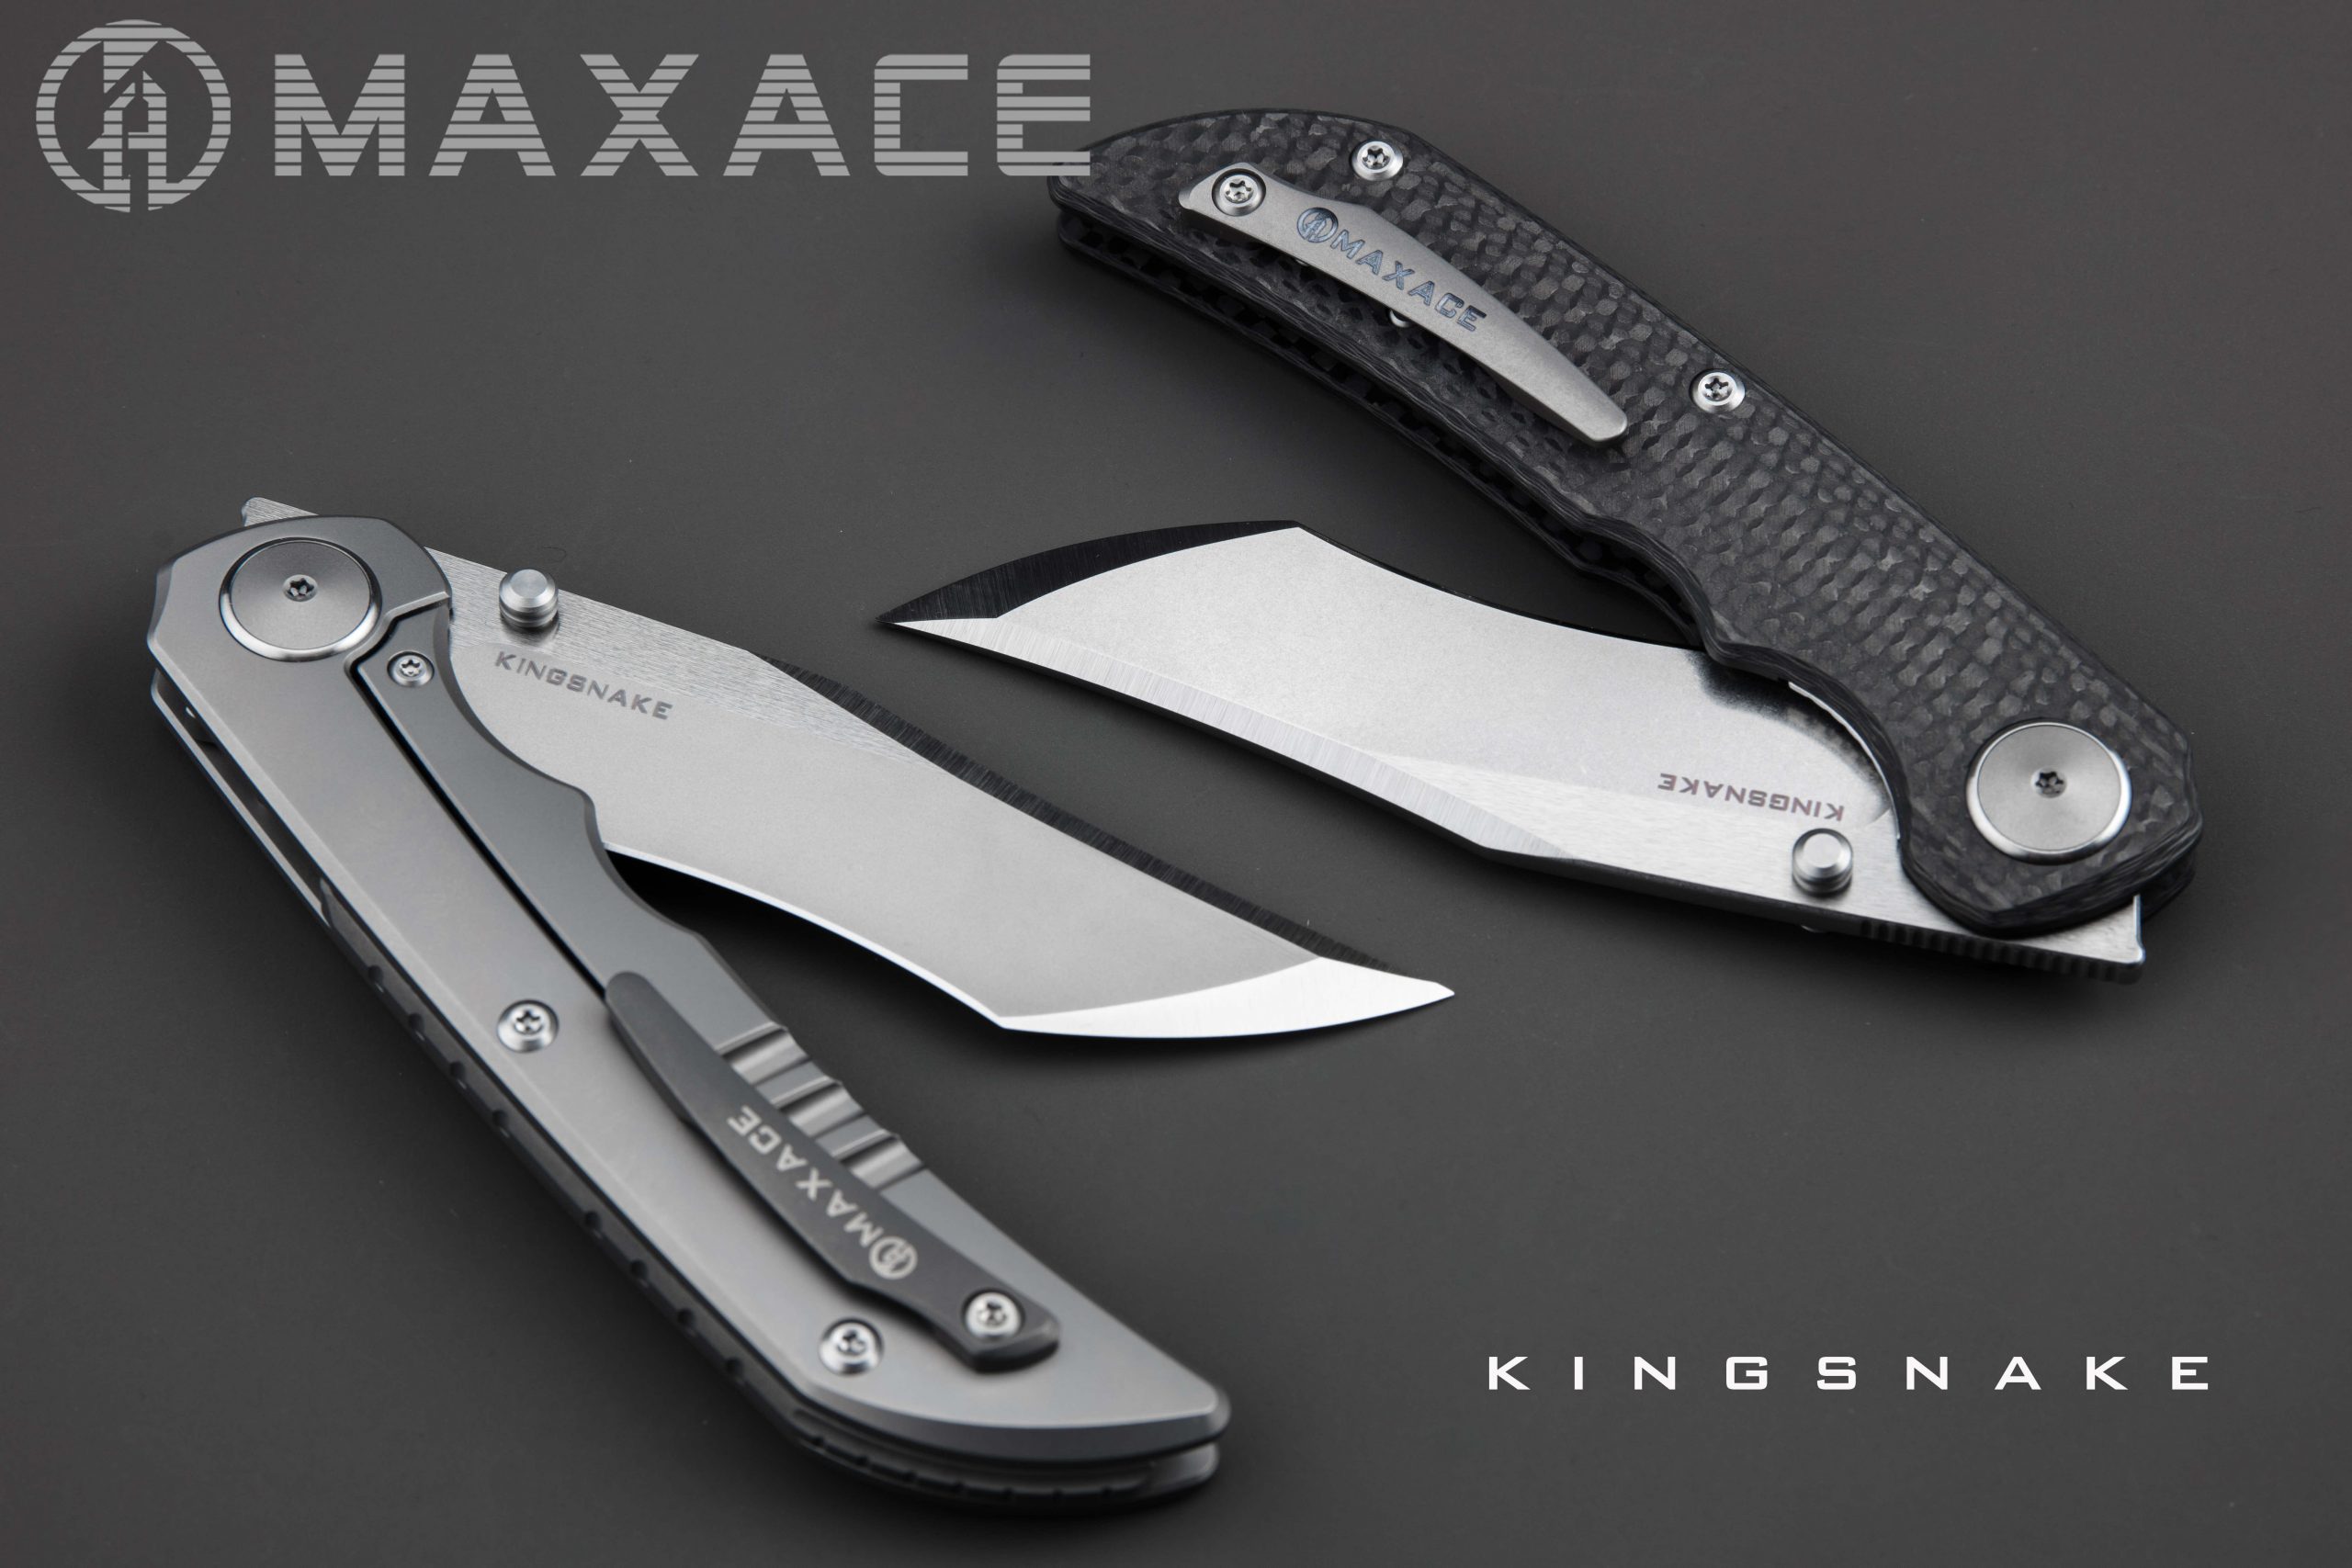 KINGSNAKE – Maxaceknives